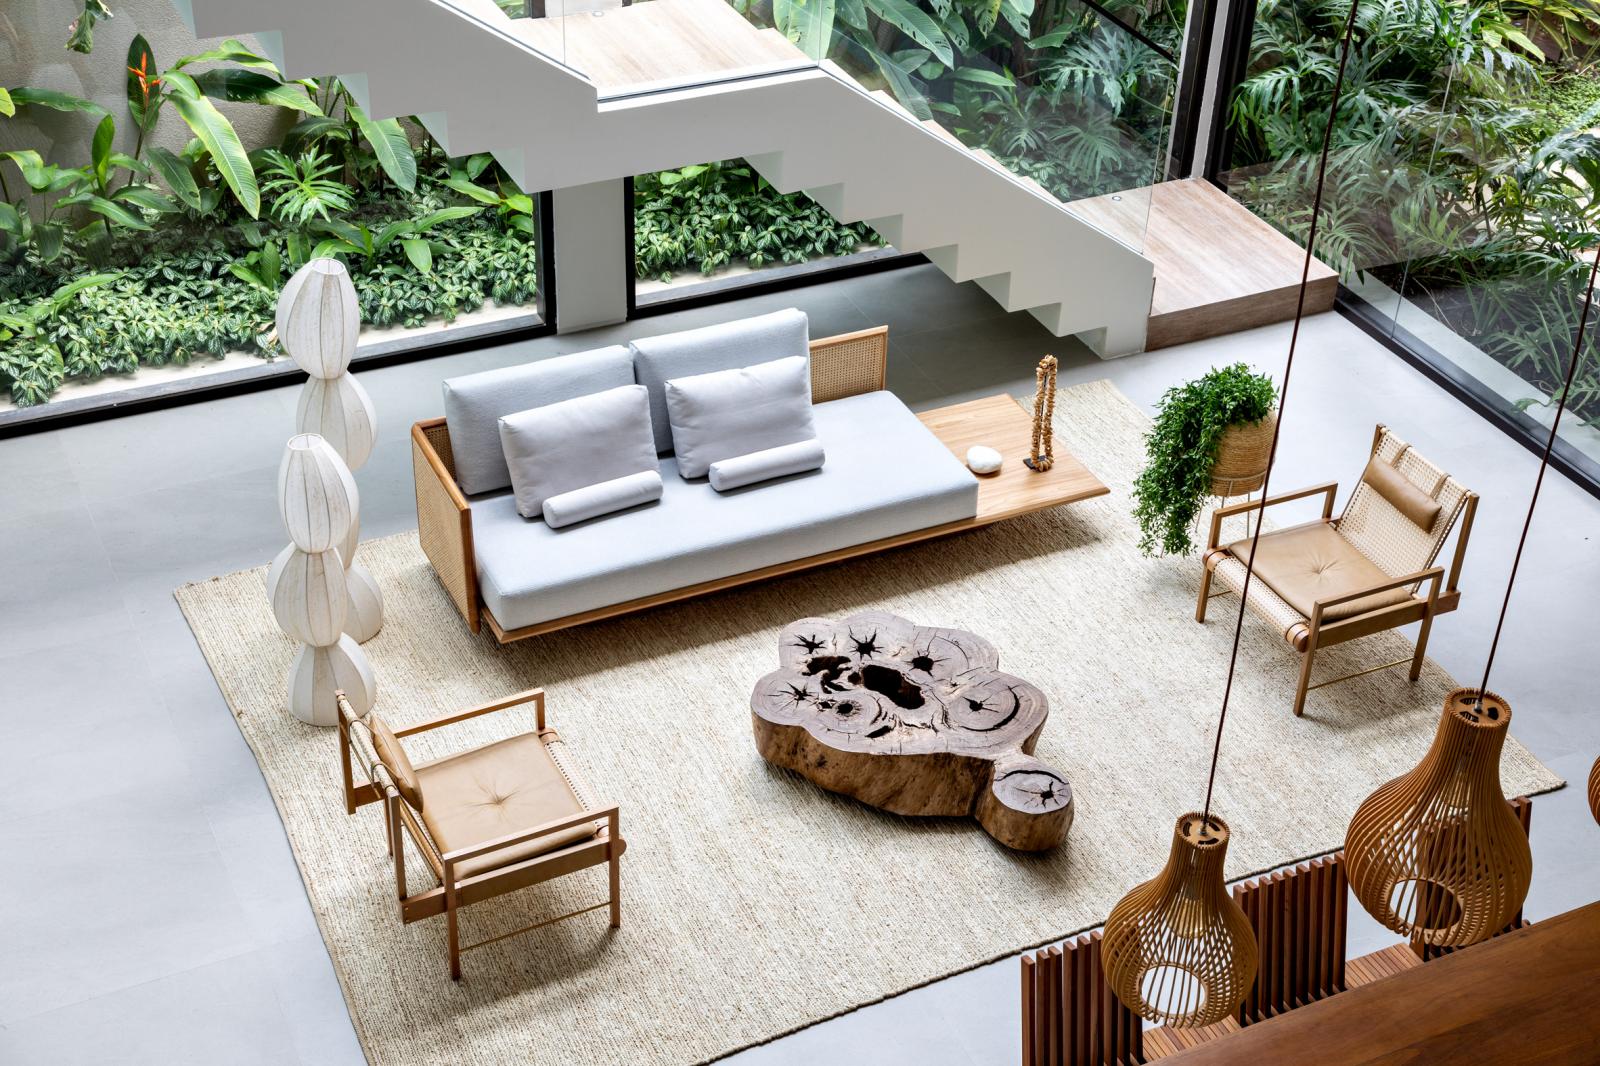 hình ảnh phòng khách ở tầng trệt nhìn từ trên cao với sofa gỗ bọc nệm màu trung tính, bàn trà gỗ nguyên khối